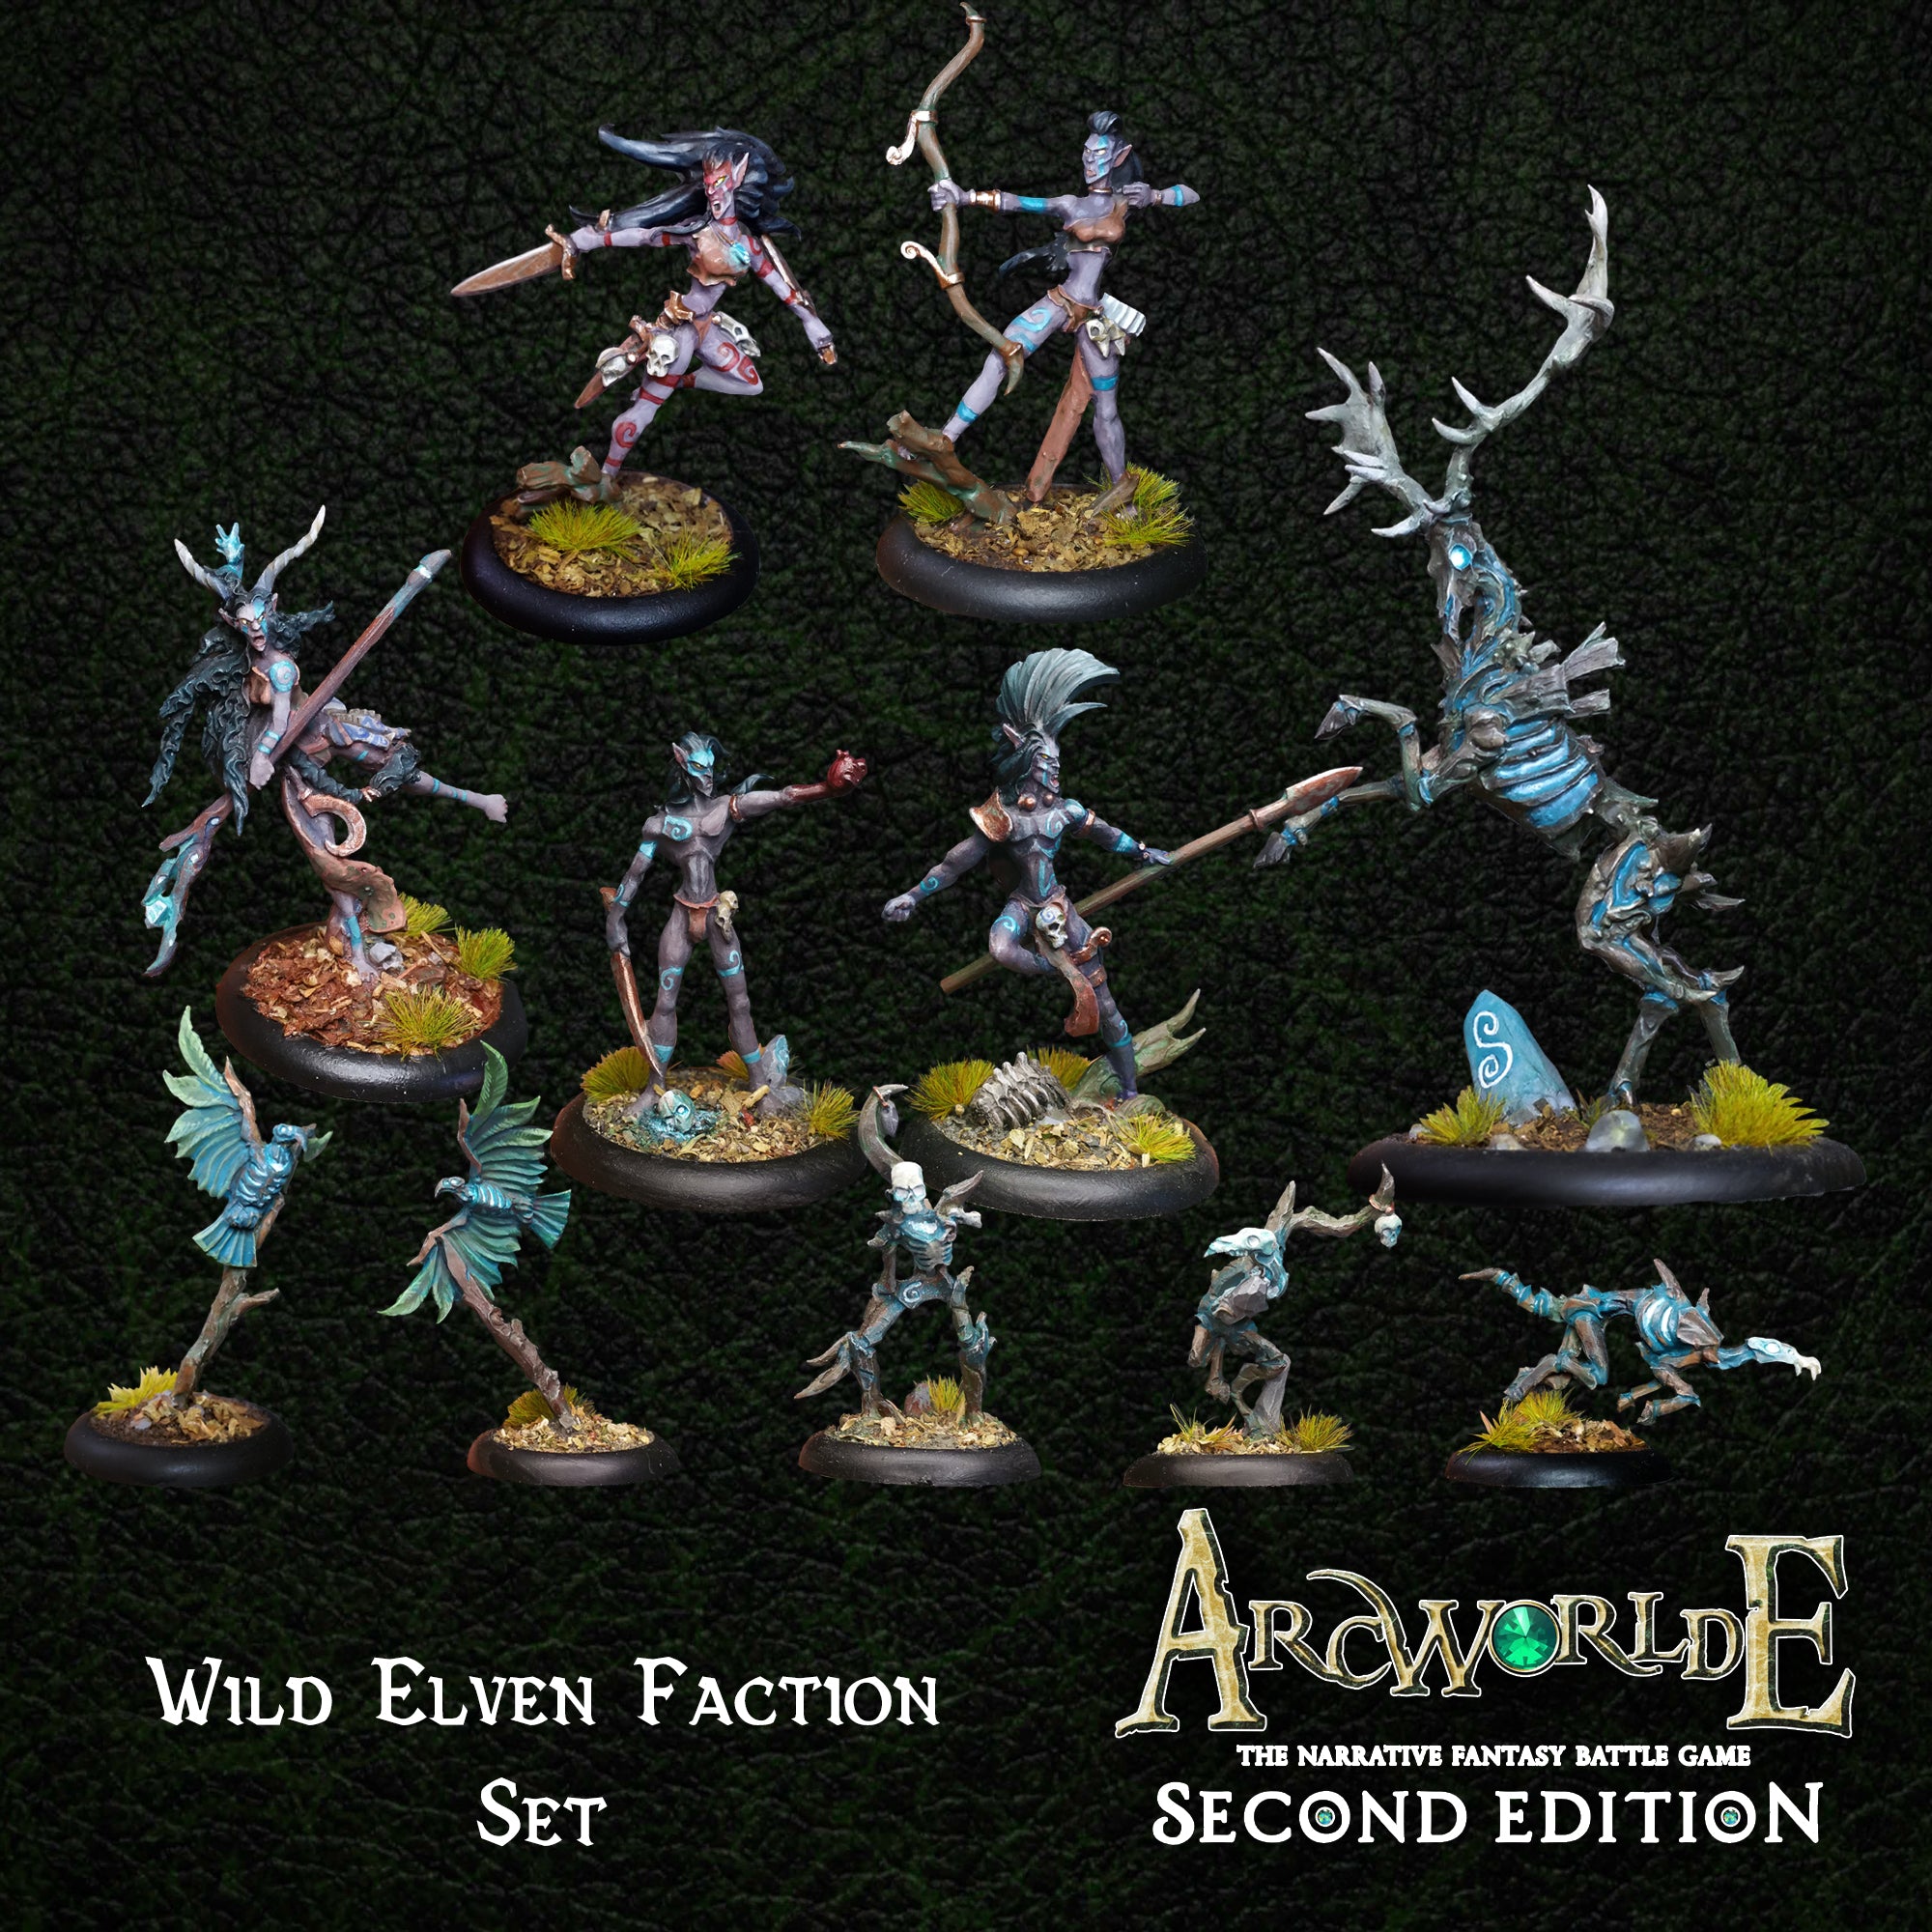 Wild Elven Faction Set